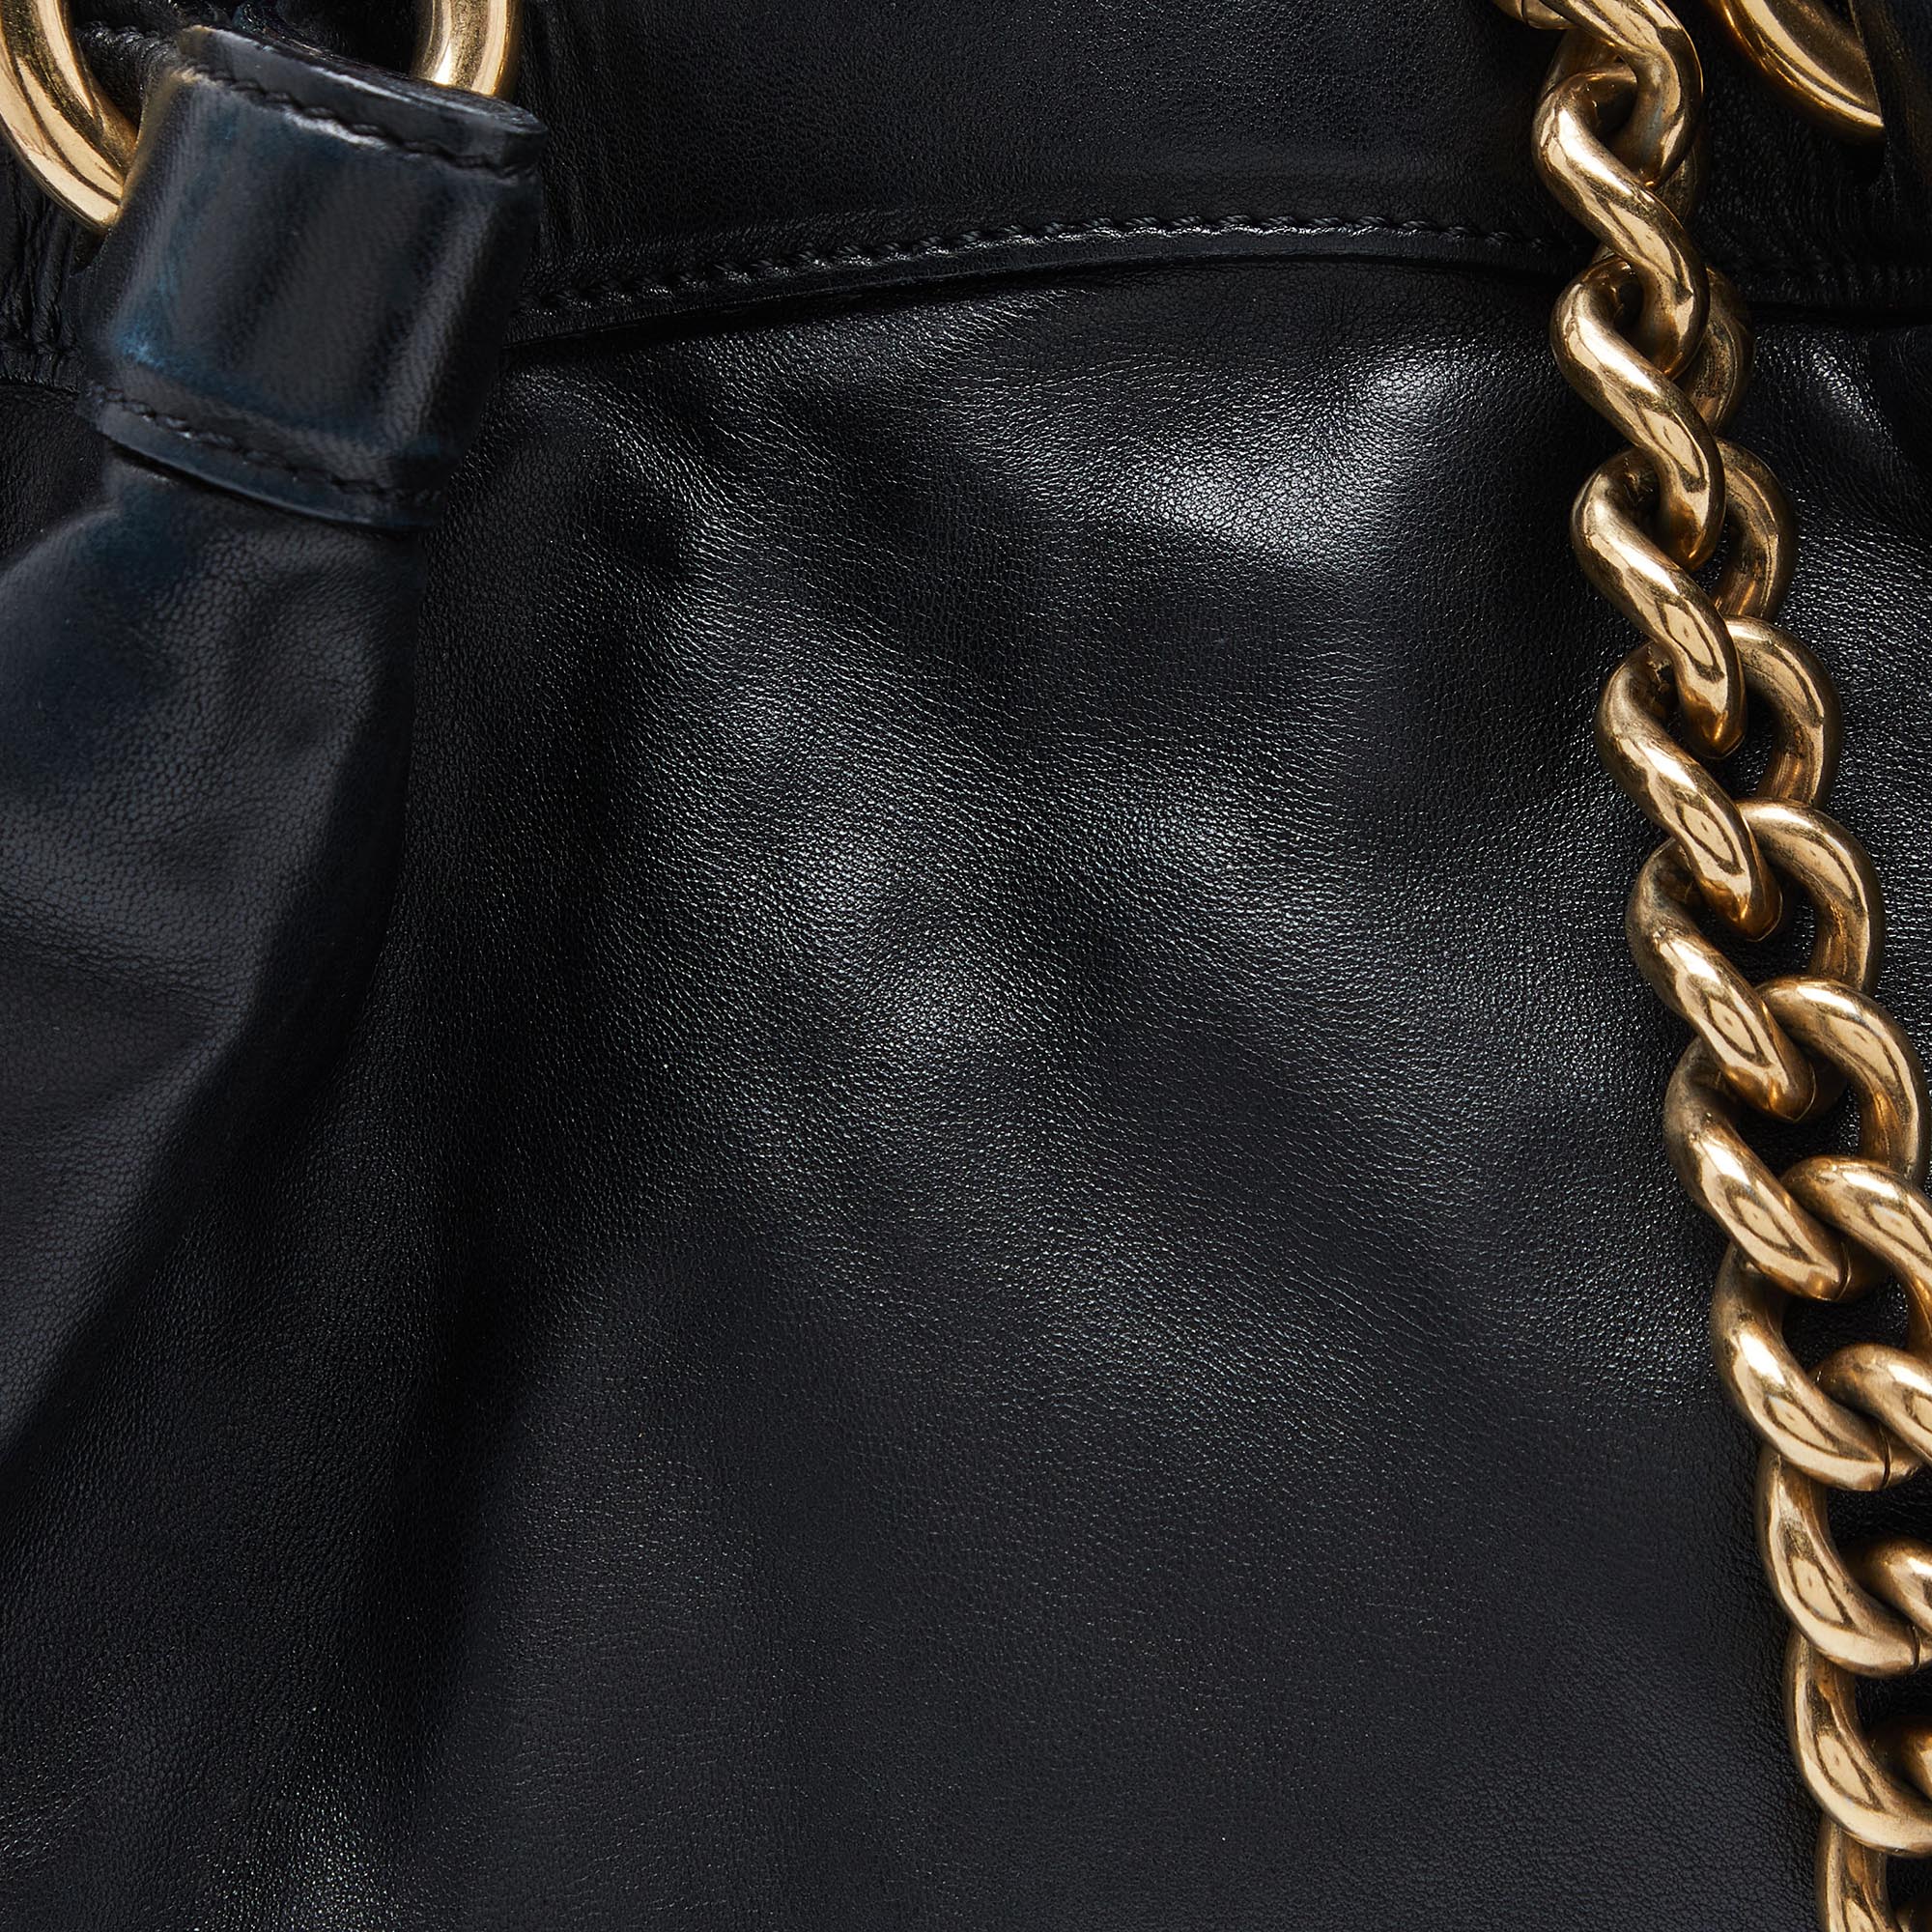 Marc Jacobs Black Leather Stud Embellished Knot Satchel